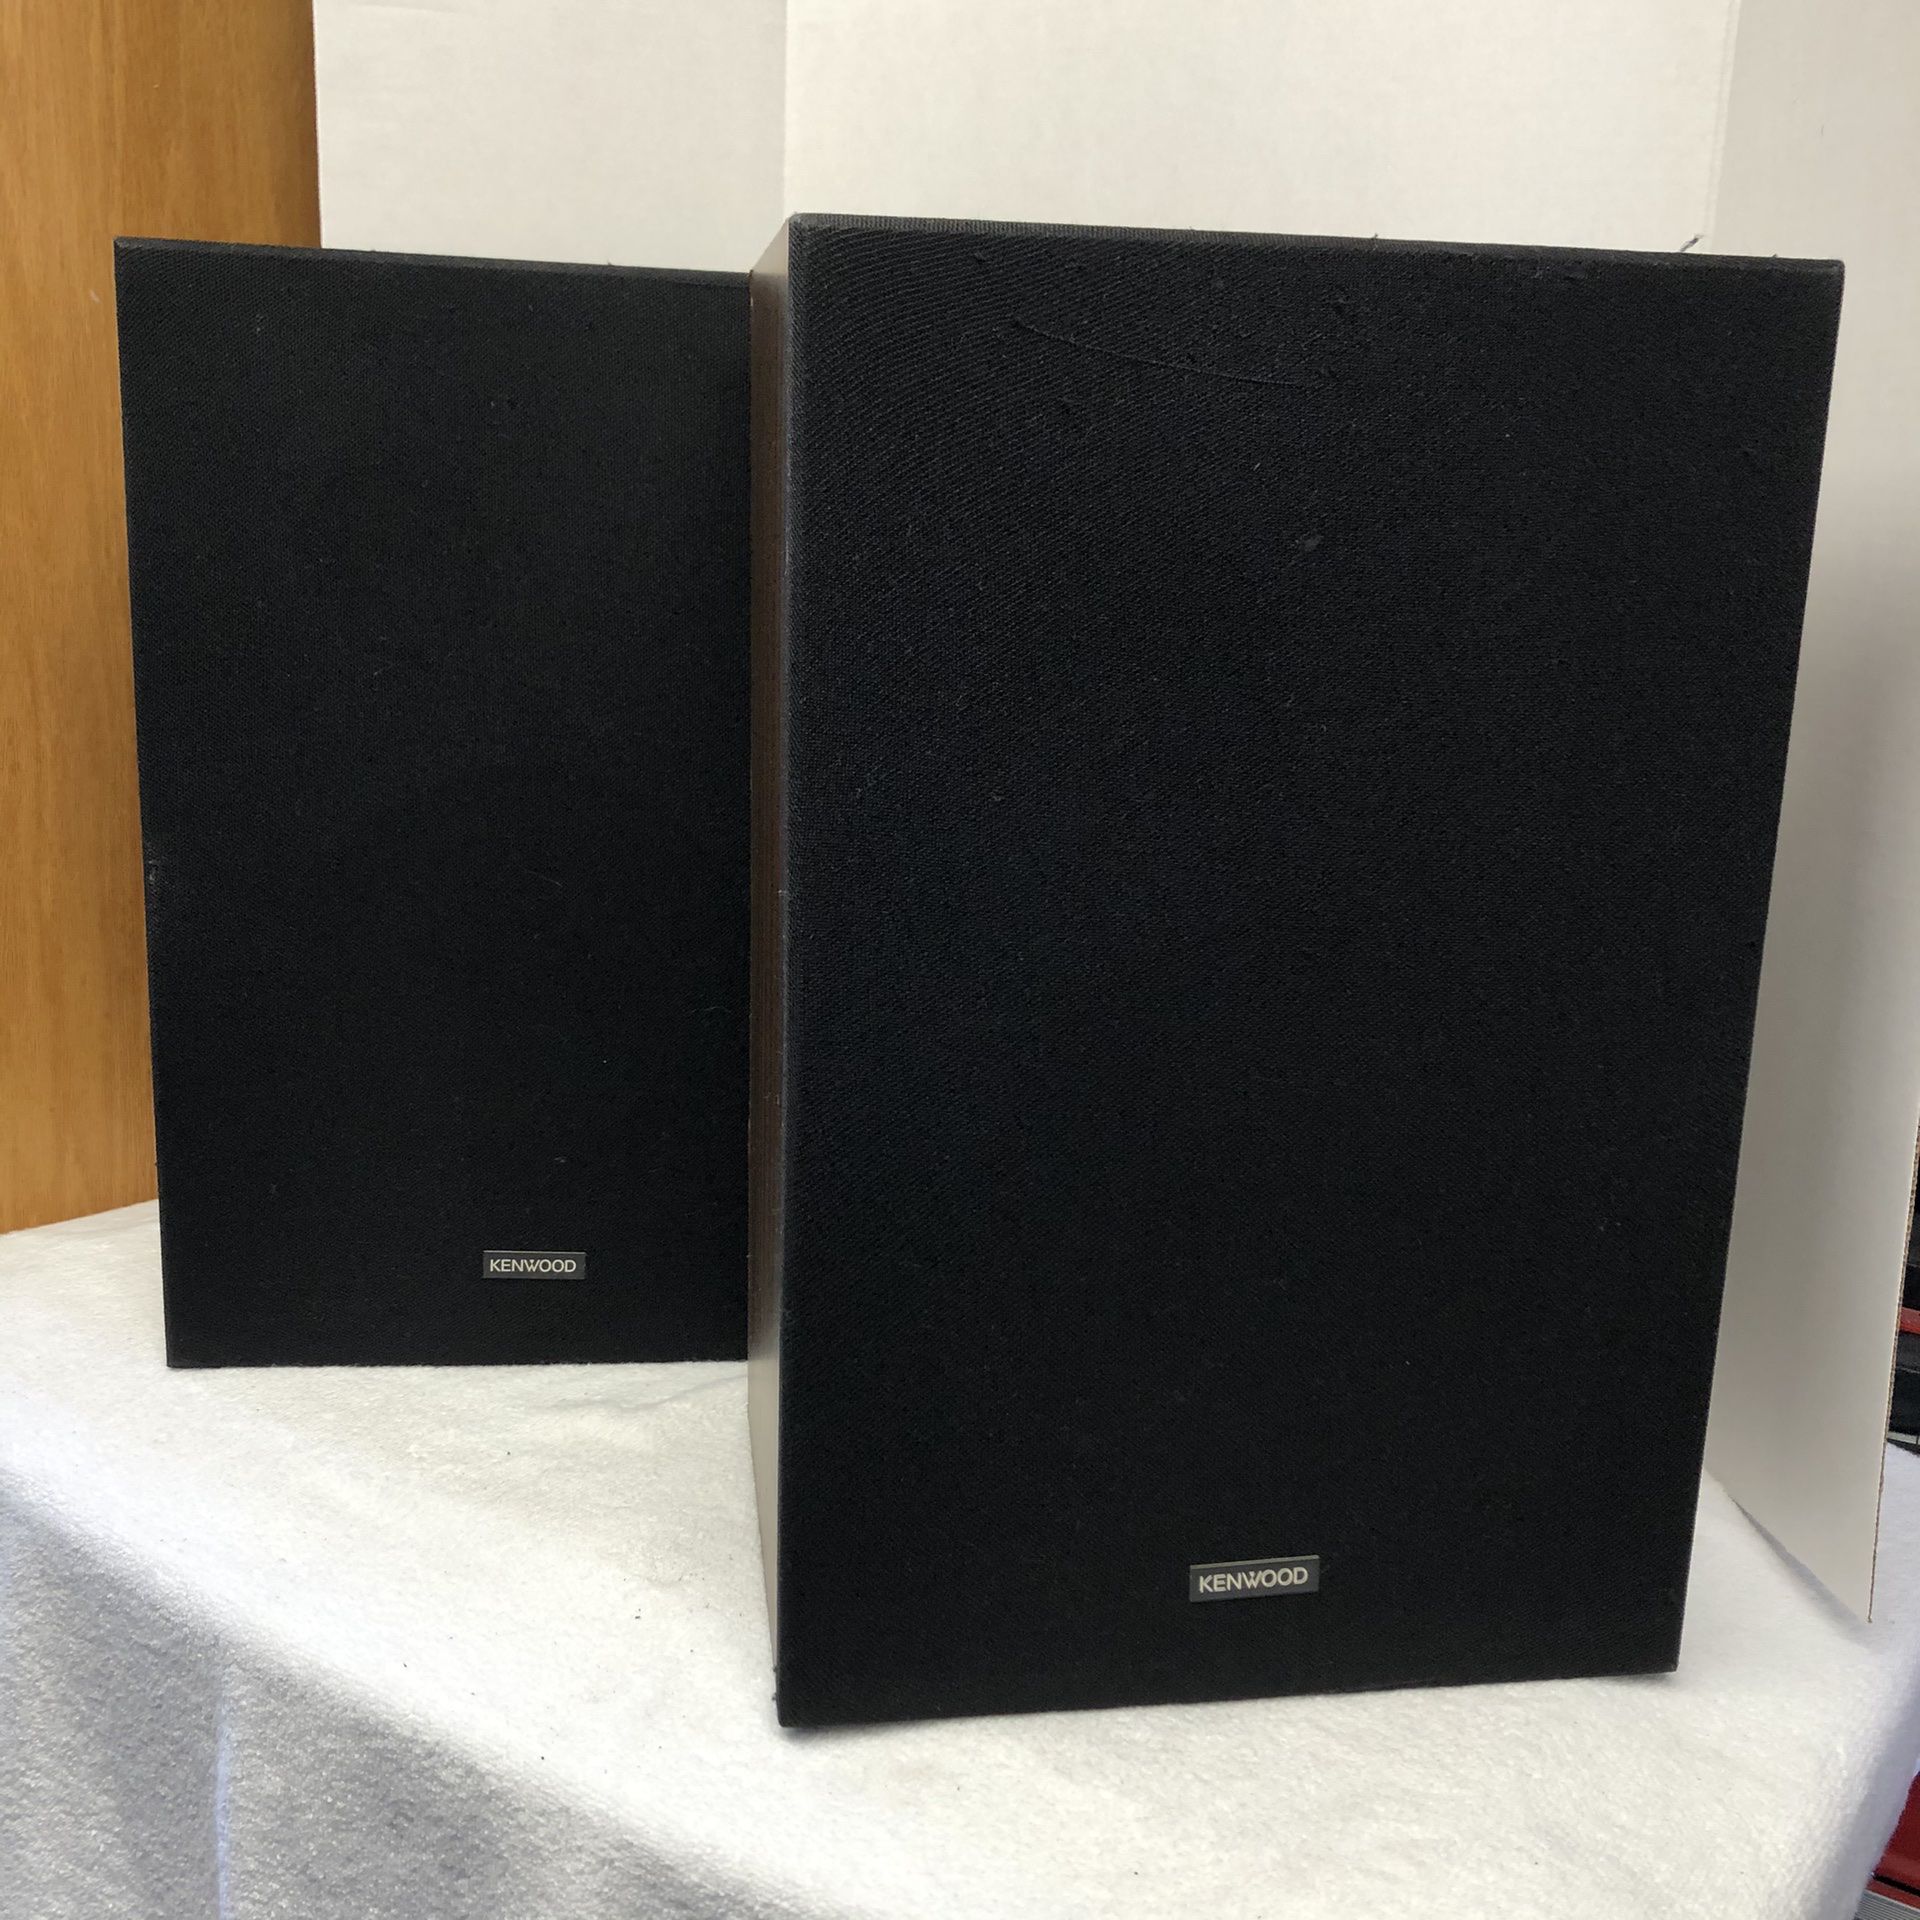 Kenwood KR 9600/Klipsch Chorus II Speakers.. - $2,500 (Las Vegas) -  electronics - by owner - sale - craigslist